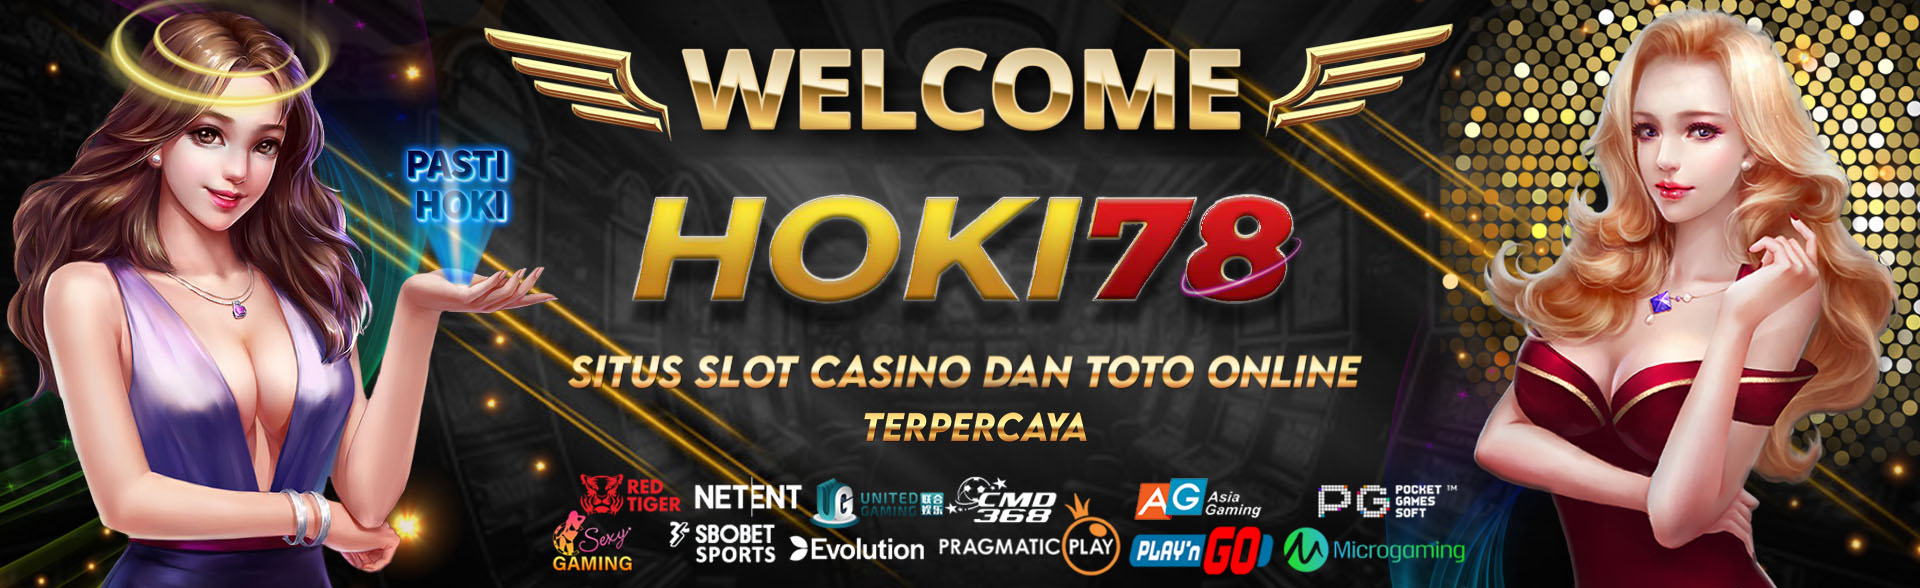 Welcome Hoki78